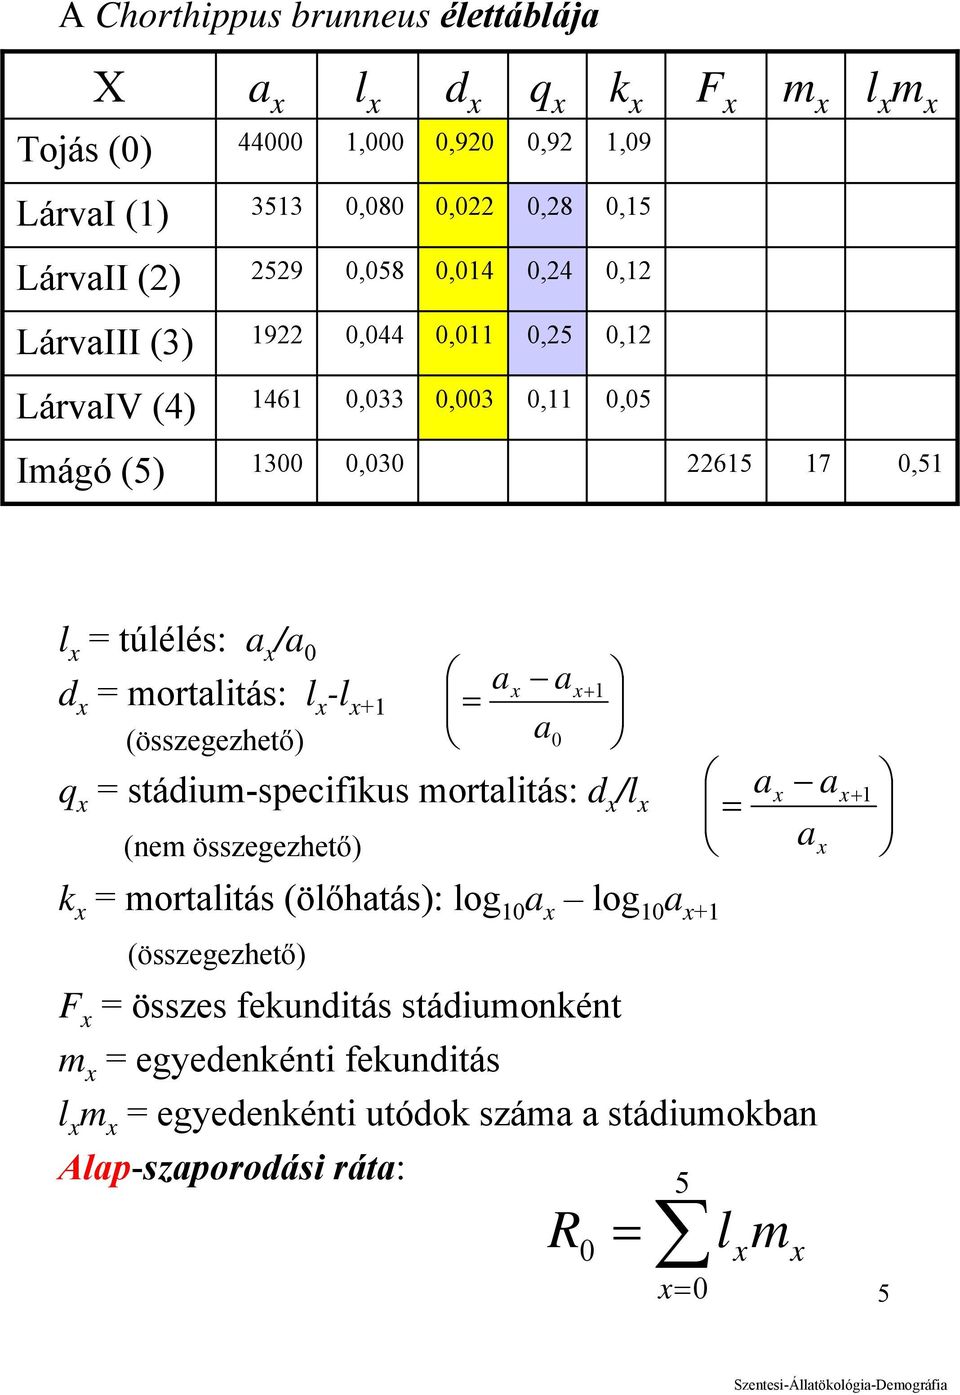 x -l x+1 (összegezhető) q x = stádium-specifikus mortalitás: d x /l x (nem összegezhető) a a a x x+ 1 = 0 ax x+ 1 = a a x k x = mortalitás (ölőhatás): log 10 a x log 10 a x+1